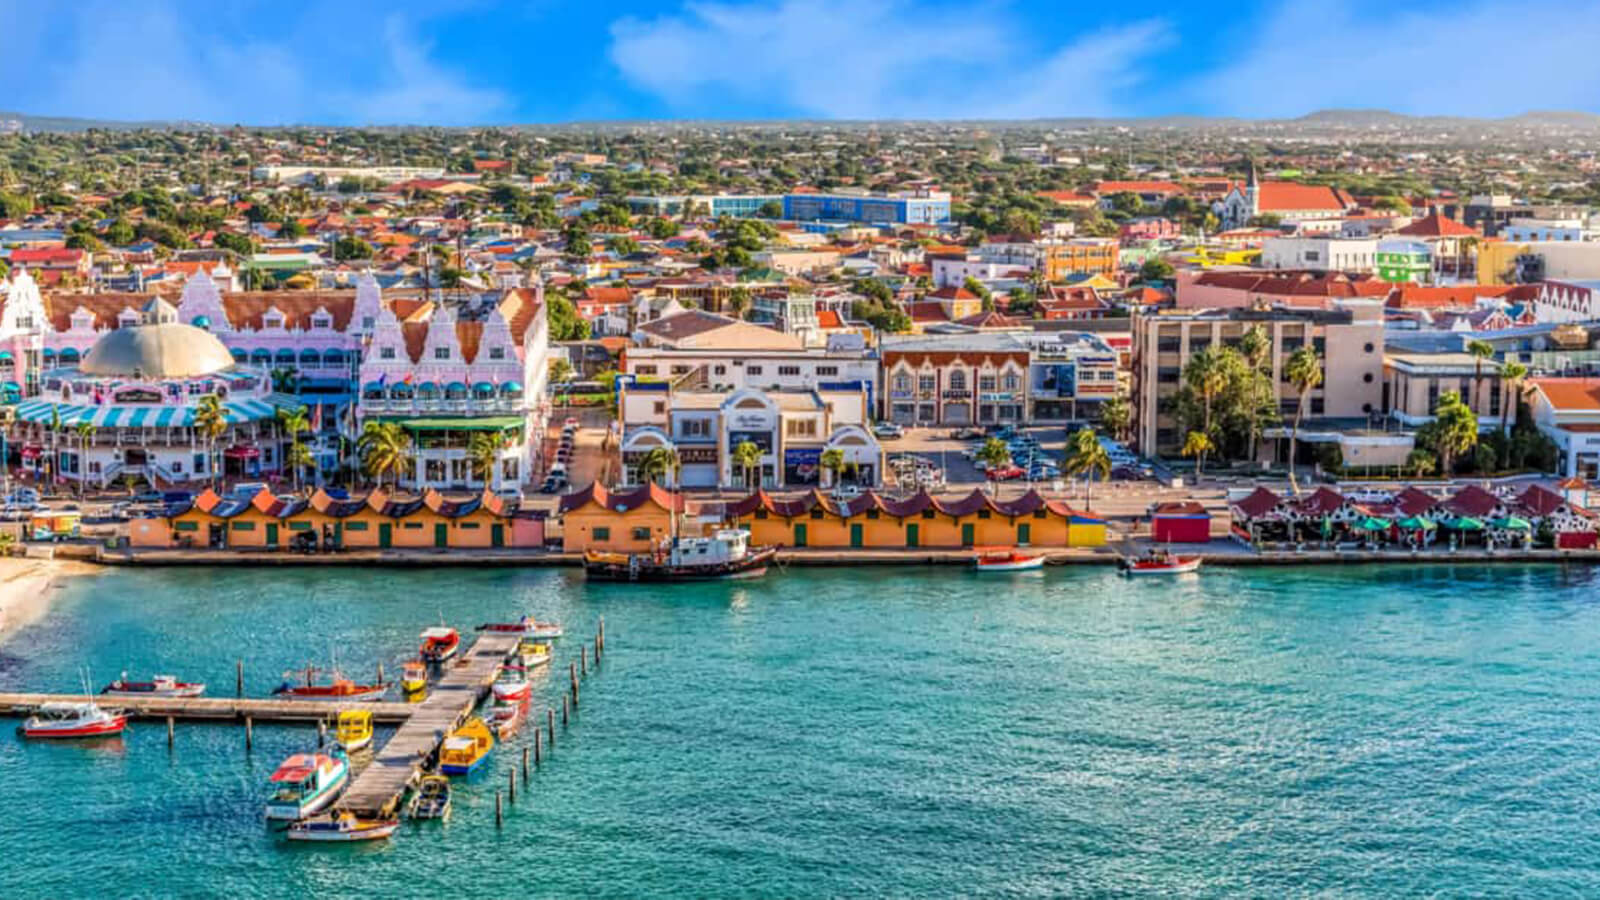 Image of Oranjestad, Aruba